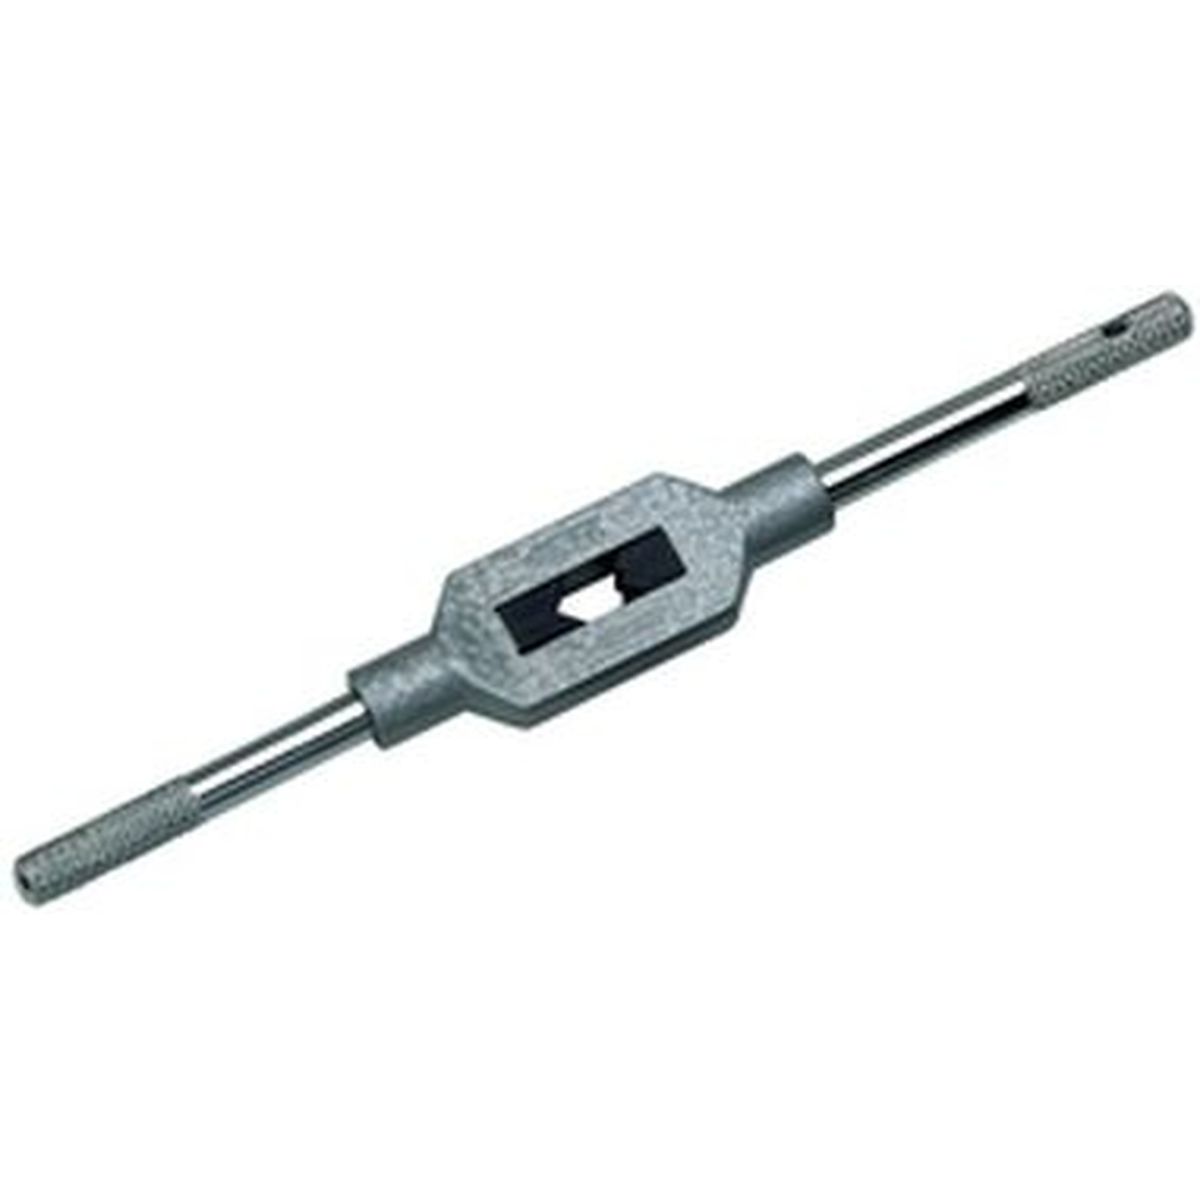 VÖLKEL Adjustable Tap Wrenches DIN1814 3 